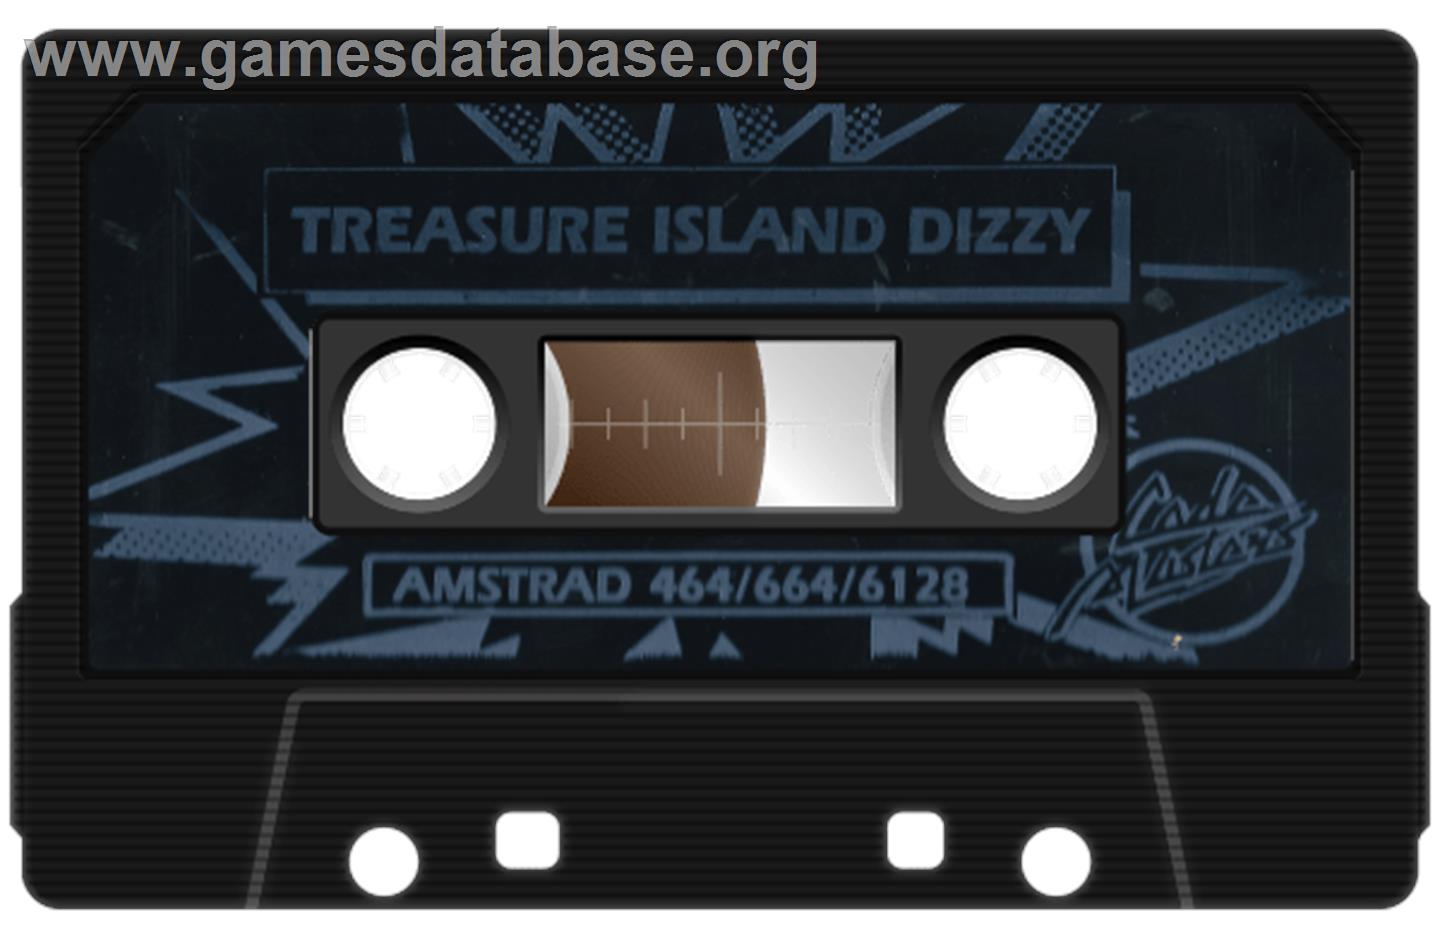 Treasure Island Dizzy - Amstrad CPC - Artwork - Cartridge